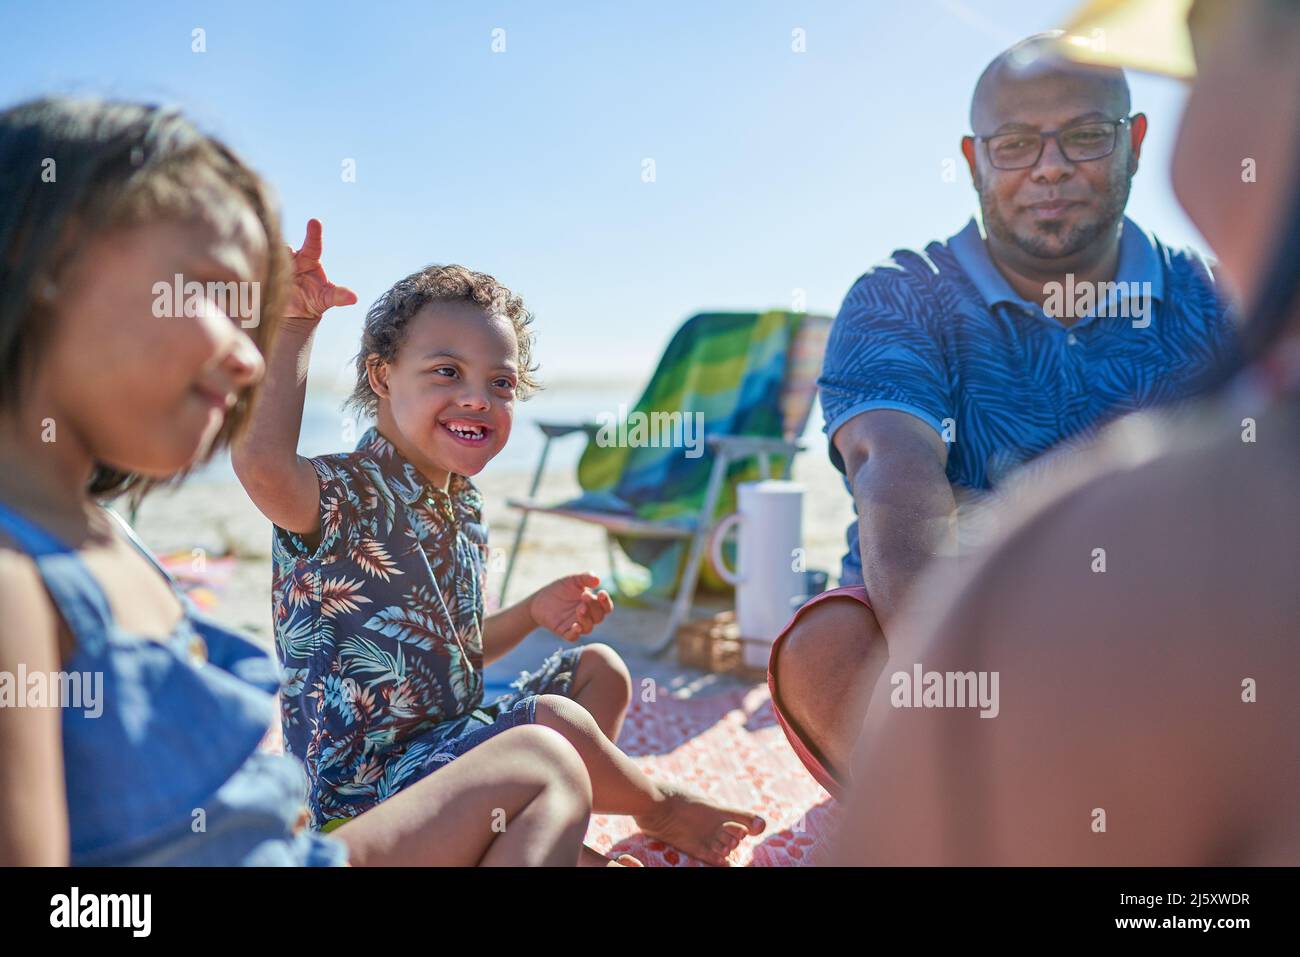 Glücklicher Junge mit Down-Syndrom am Strand mit Familie Stockfoto